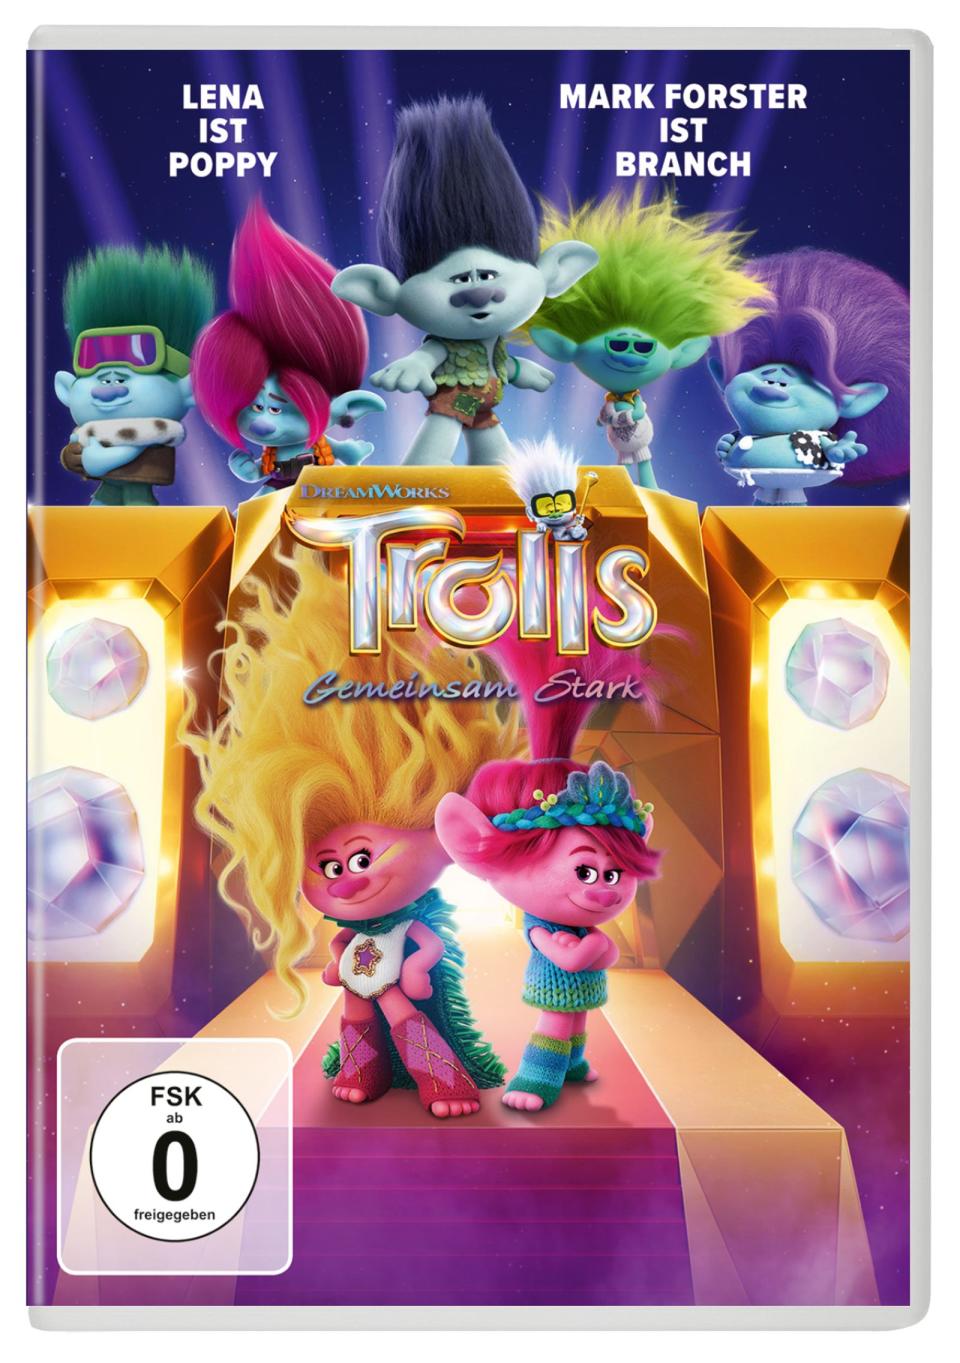 Mit dem Dreamworks-Animationsspaß "Trolls - Gemeinsam stark"  wird die schrille Gutelaune-Geschichte um Poppy, Branch und Co. weitererzählt. (Bild: Universal Pictures / Dreamworks)